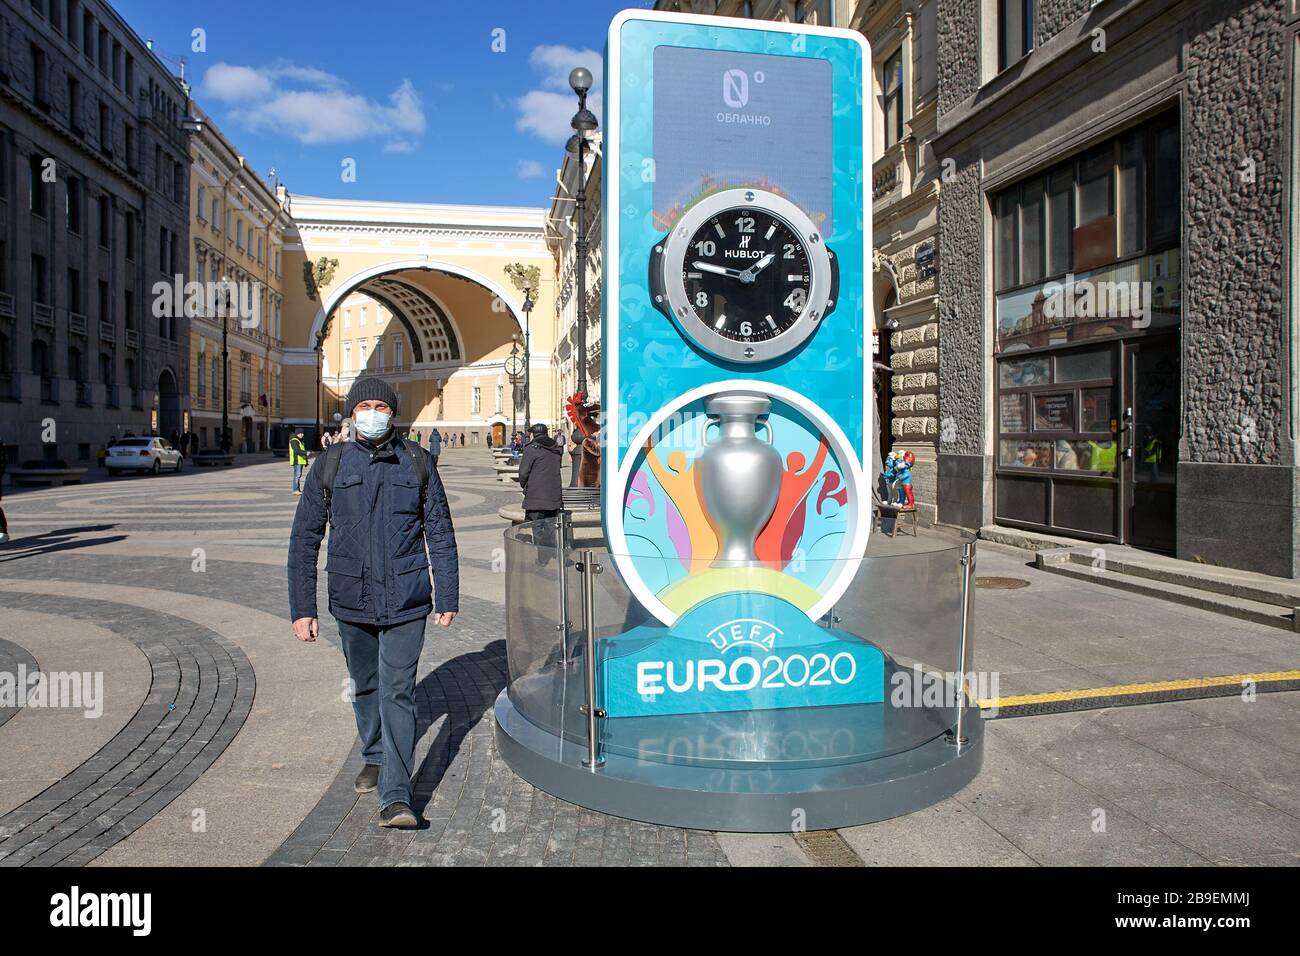 St. Petersburg, Russia - March 22, 2020: UEFA Euro 2020 postponed to 2021 due to coronavirus pandemic. Stock Photo